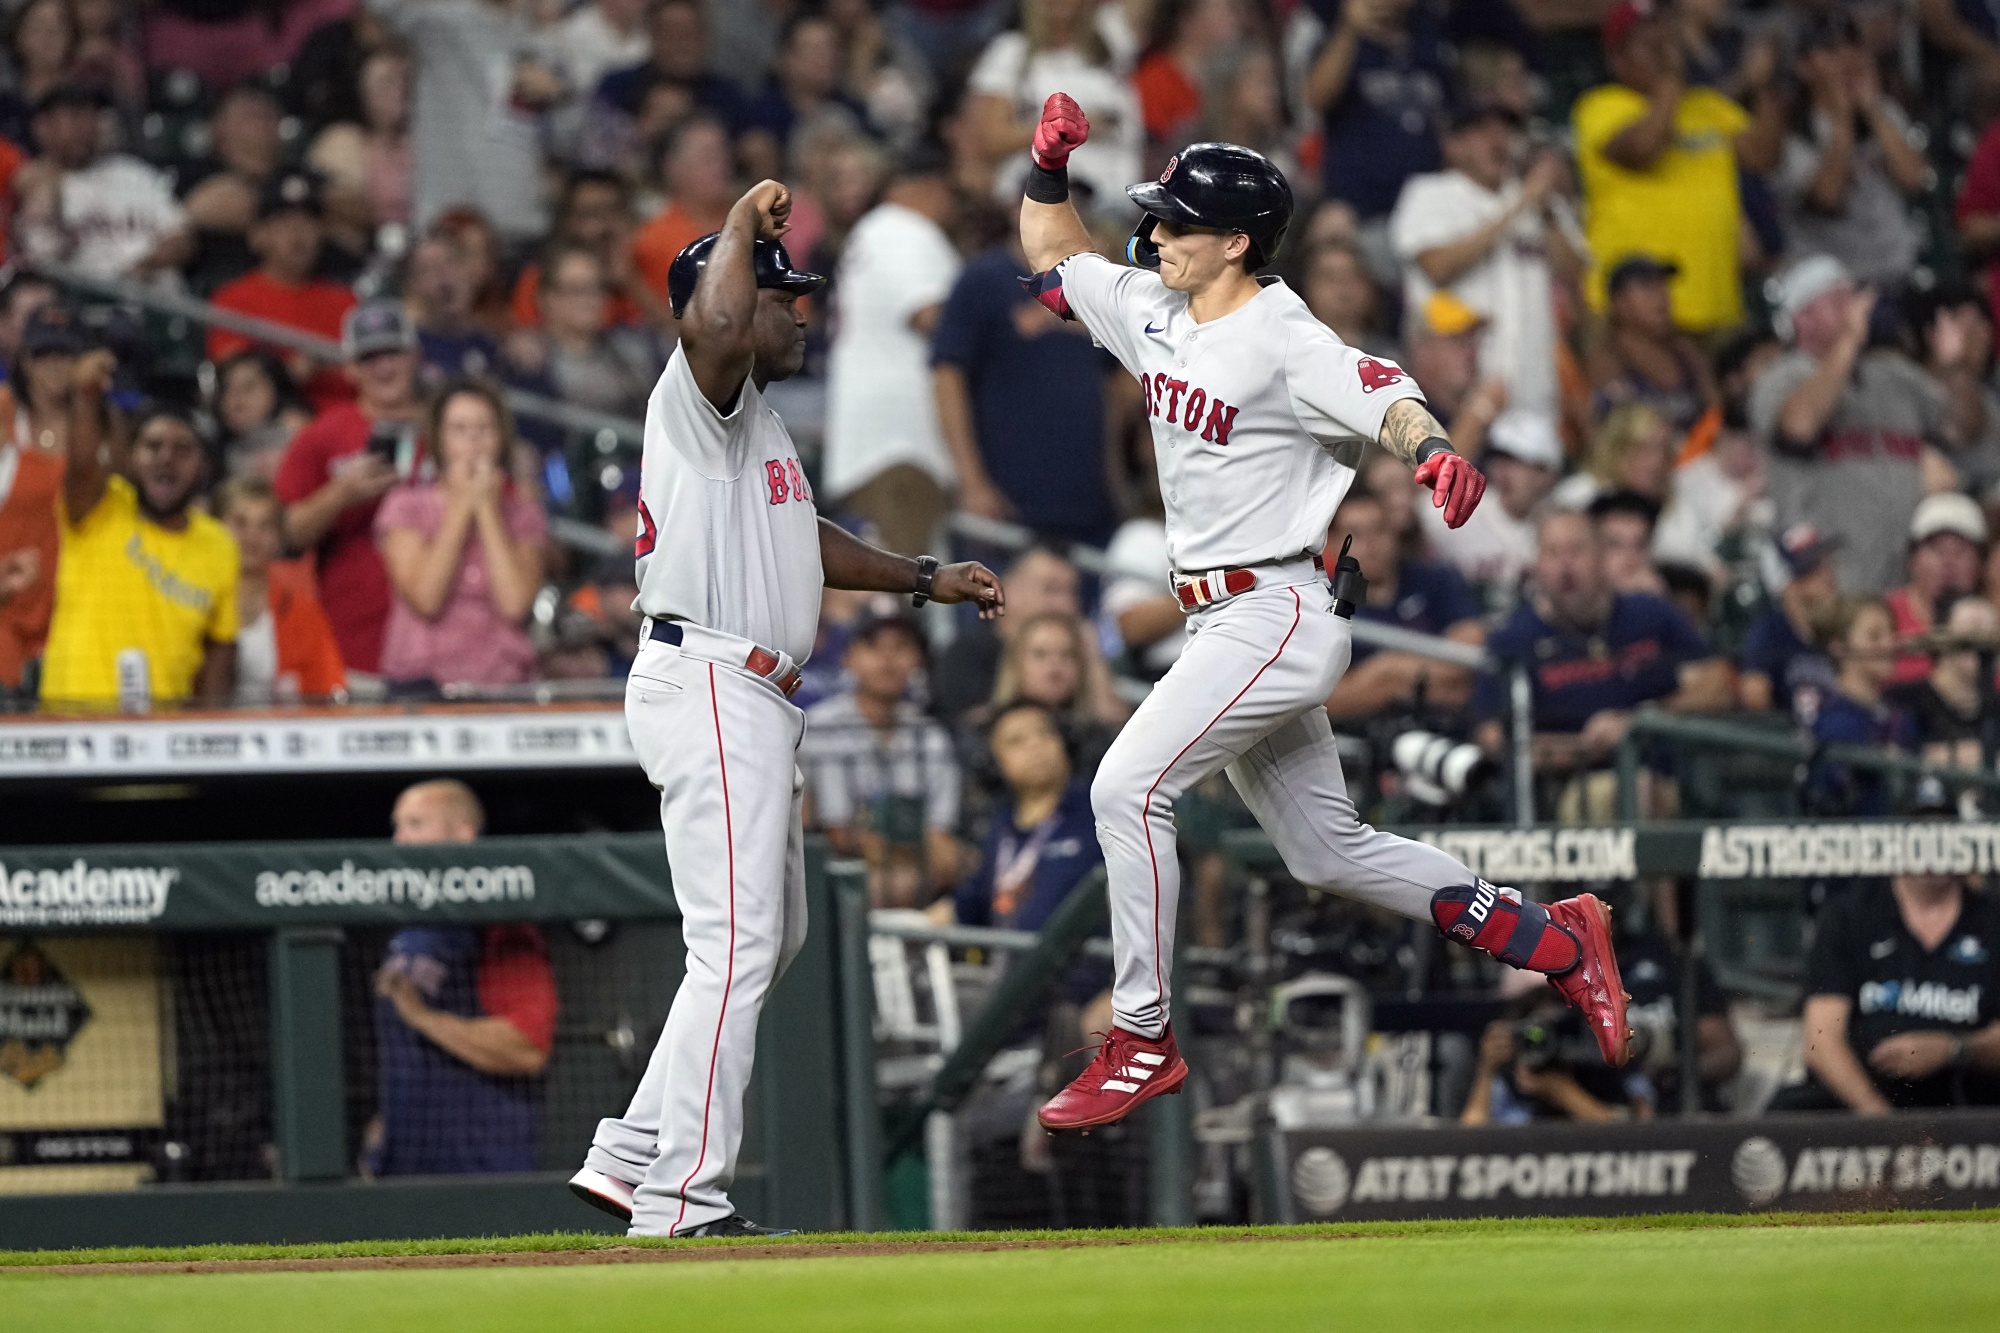 Jarren Duran's HR, 3 RBIs Power Red Sox Past Astros 3-2 - Bloomberg